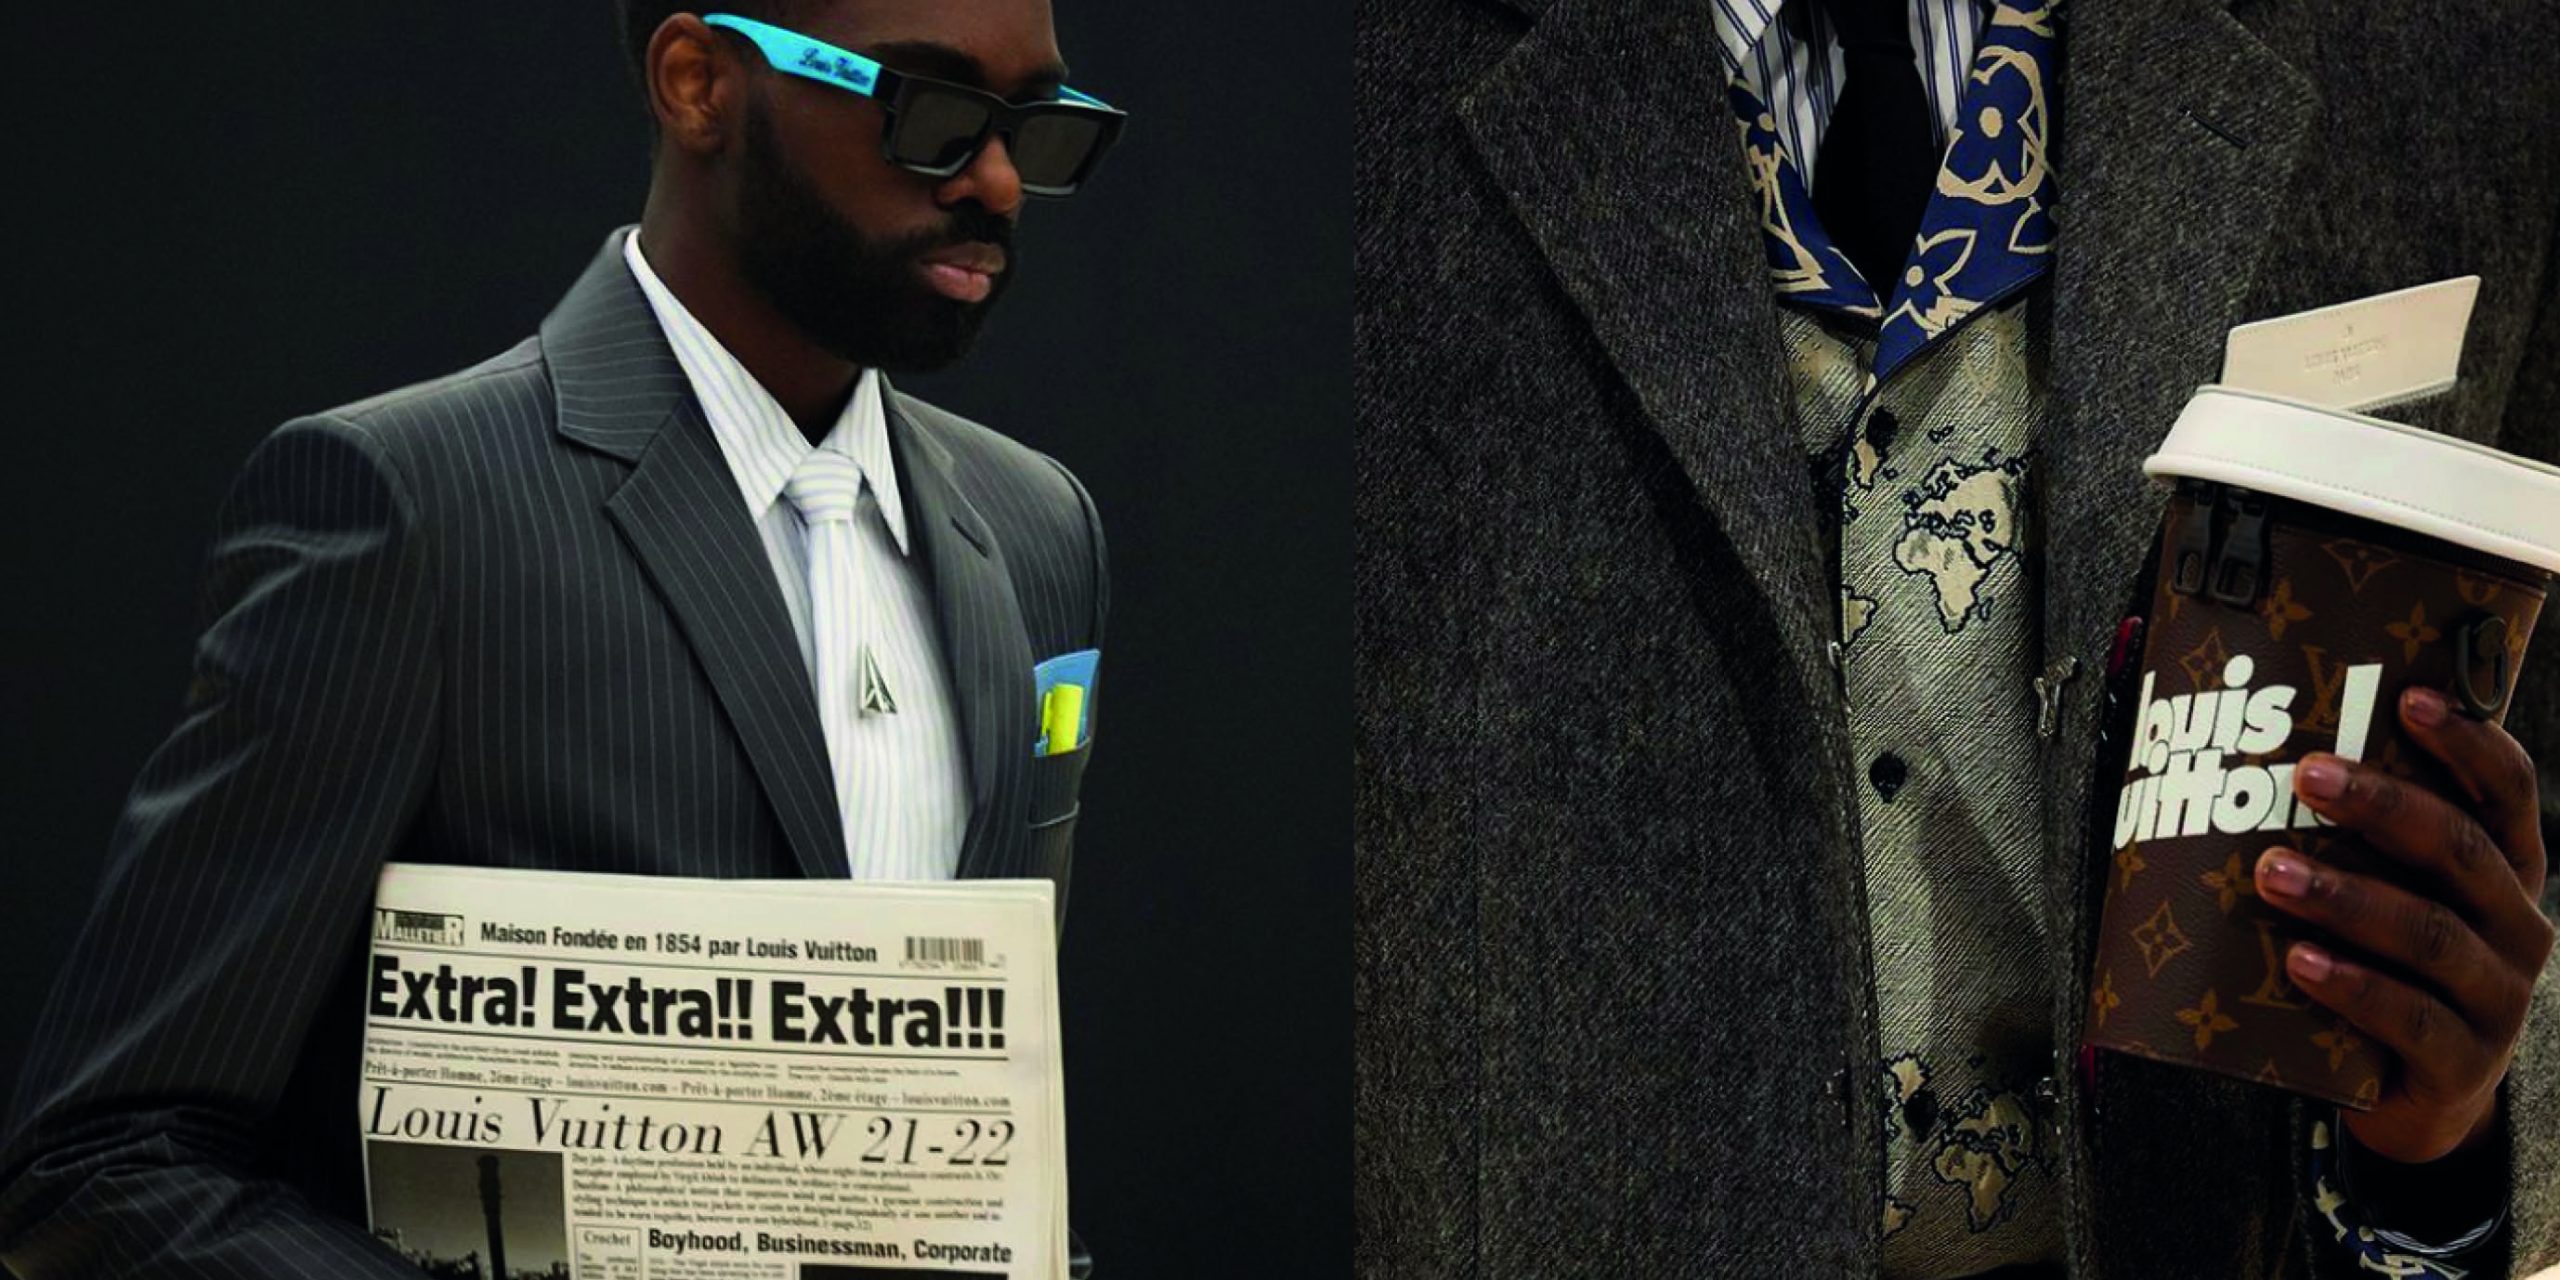 Mẫu túi hình tờ báo của Louis Vuitton có giá hơn 2000 USD